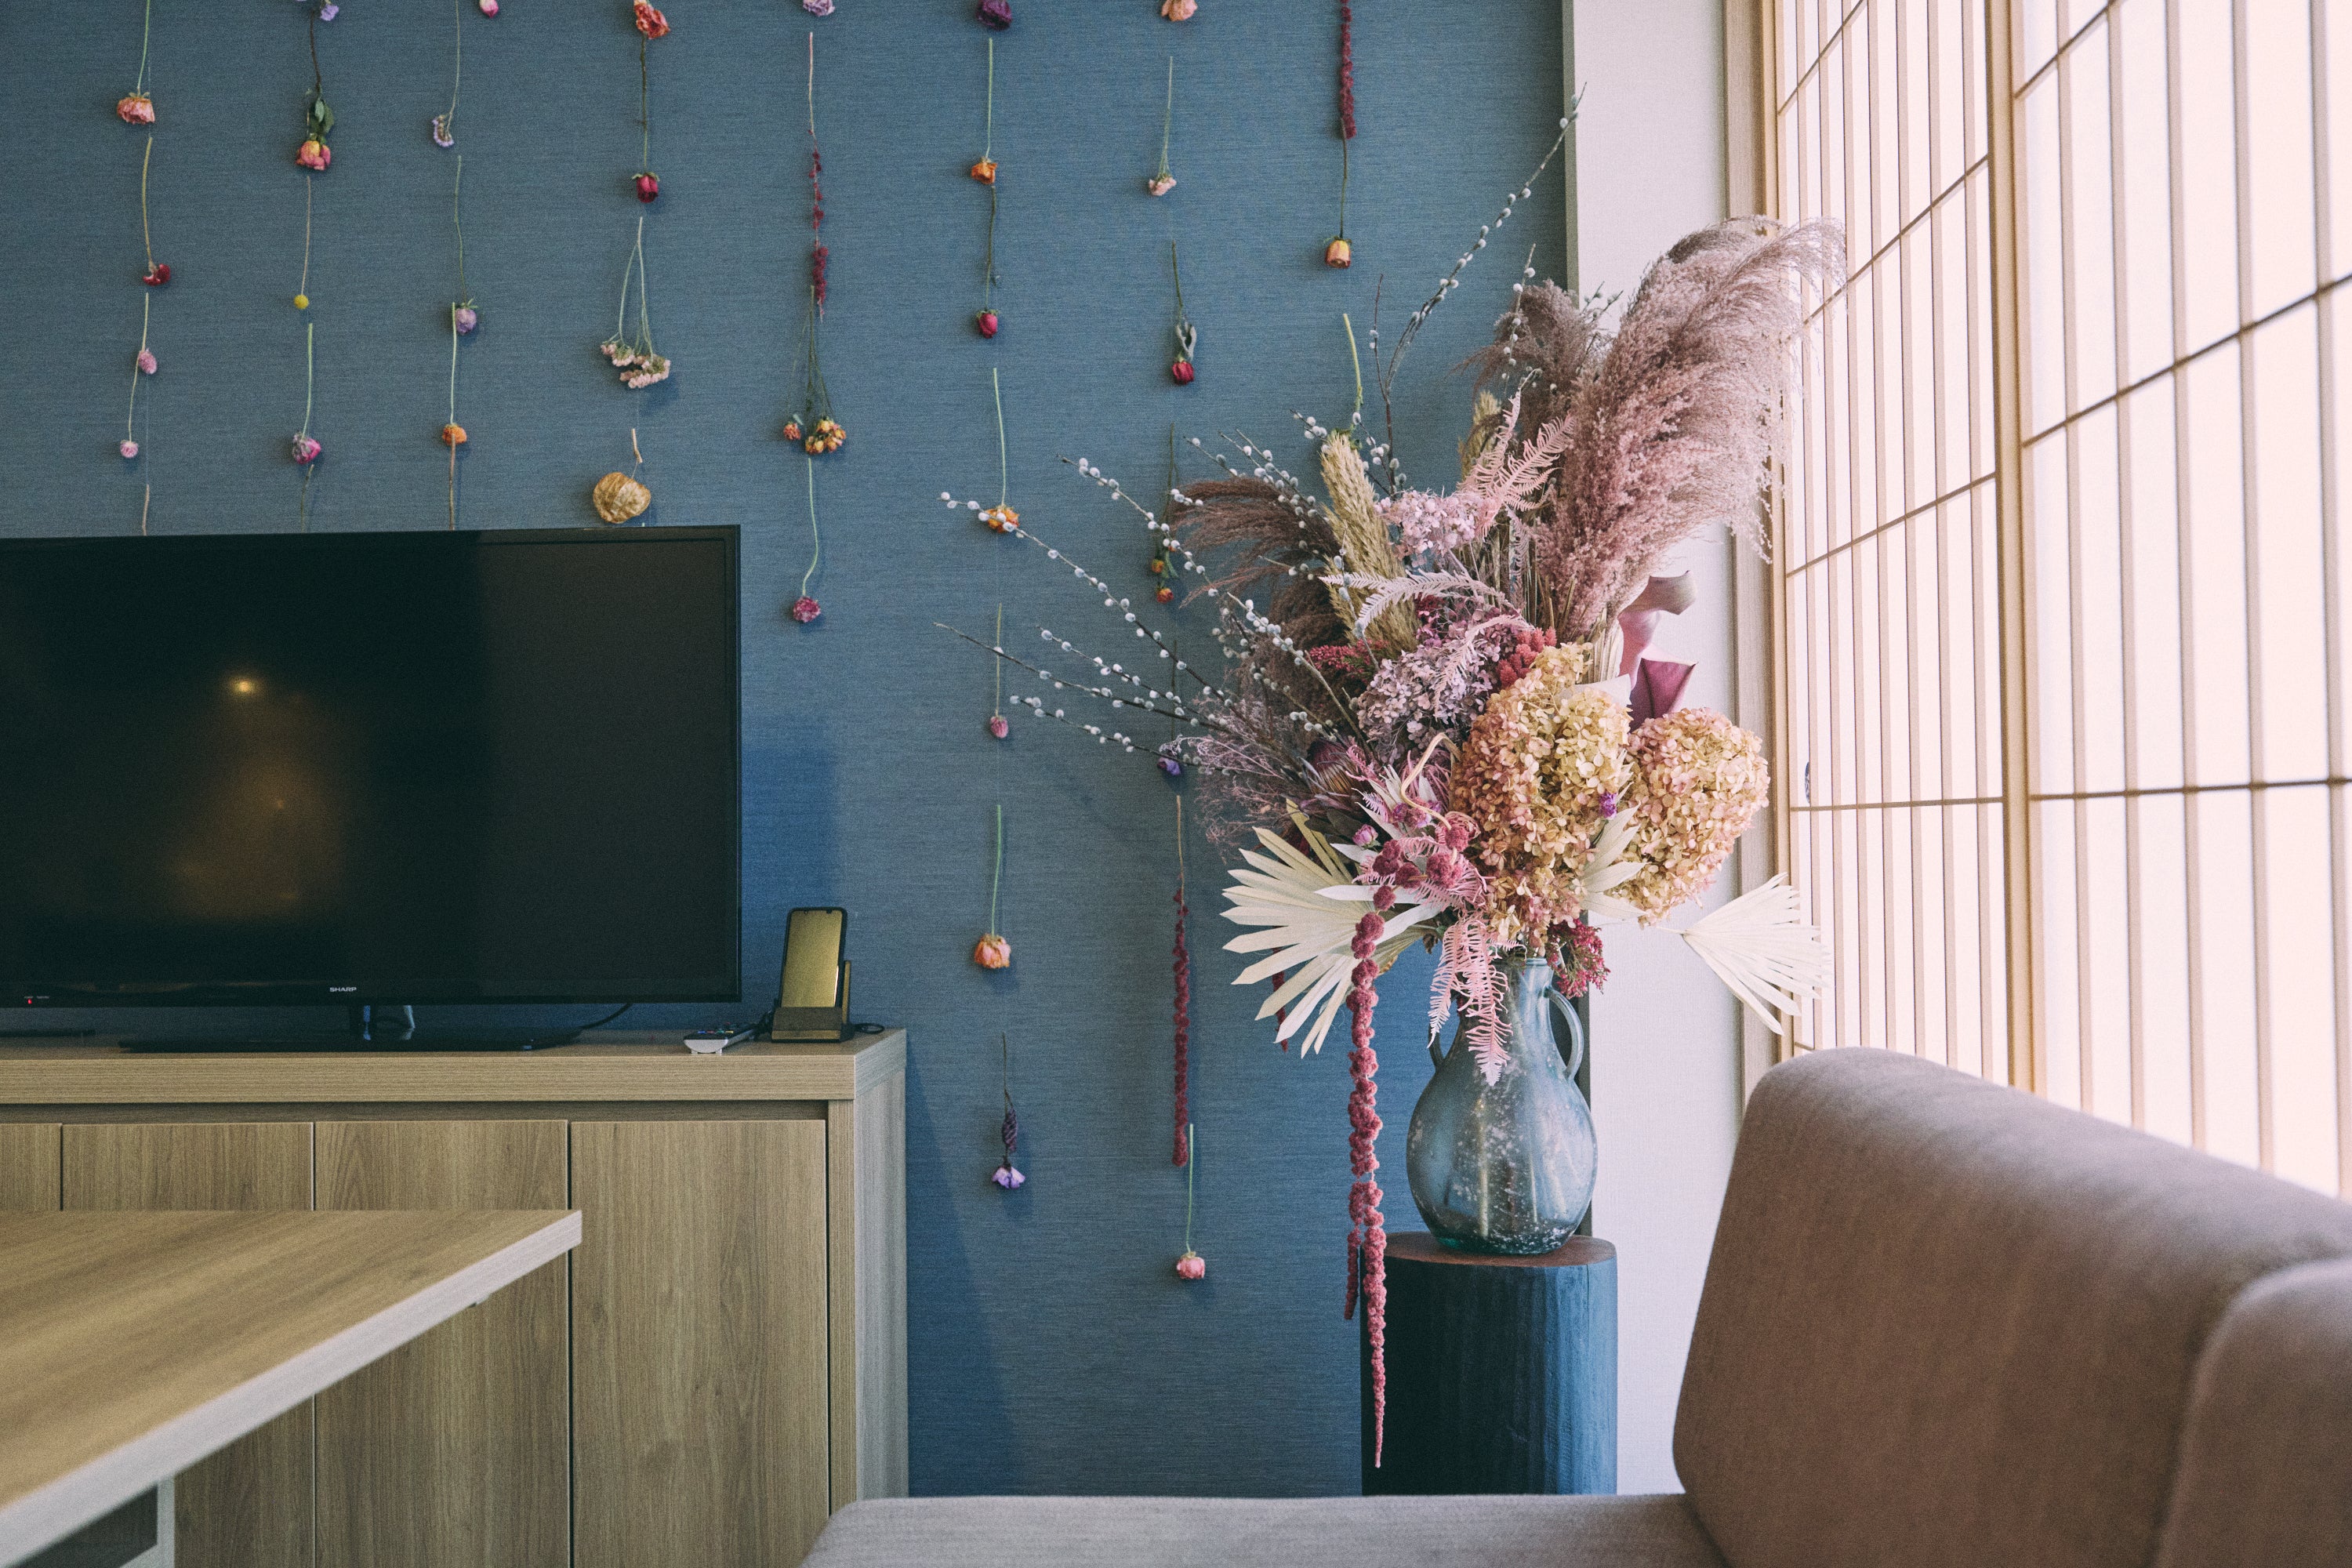 MIMARU東京 赤坂のエシカルステイで宿泊できる部屋。写真は、バラ、スターチス、ホオズキなどを活用し、華やかな装飾を施した「花、実の開きの部屋」。ほかに「土、根の地の部屋」「茎、葉の廻りの部屋」がある。